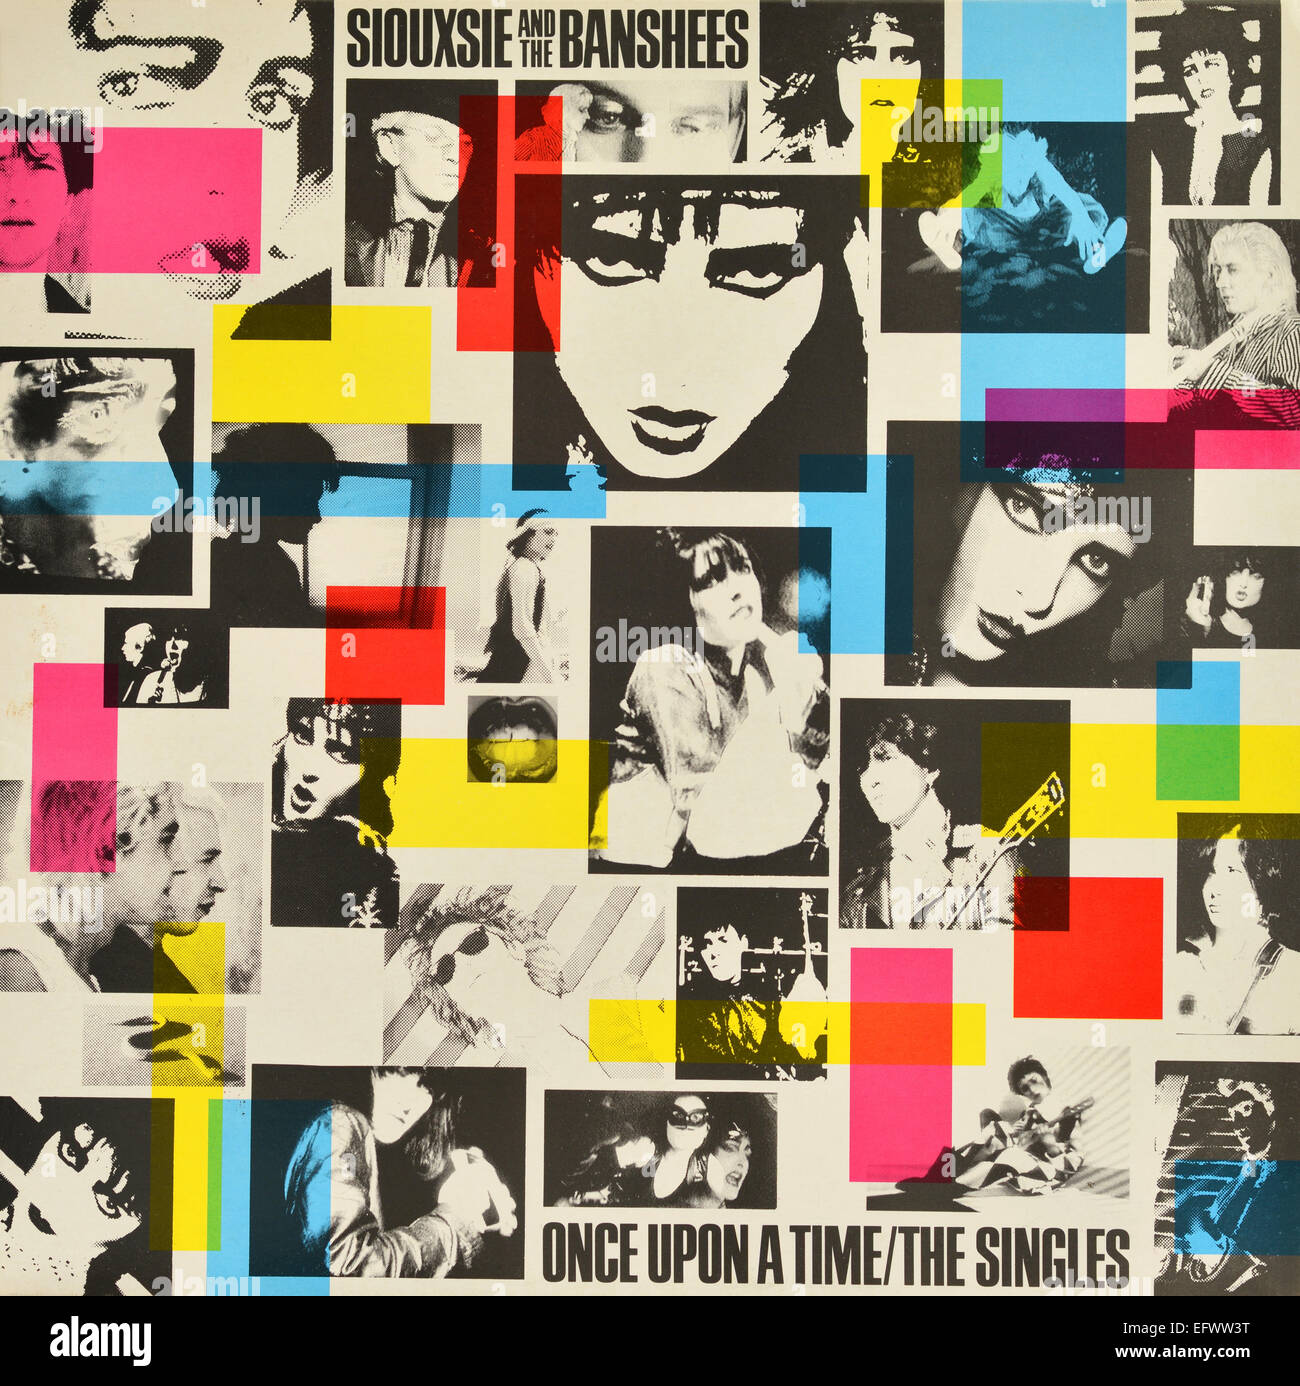 LP VINYL copertina di "una volta/Singles' di Siouxsie and the Banshees. Rilasciato nel 1981 sulla critica Polydor etichetta musicale Foto Stock